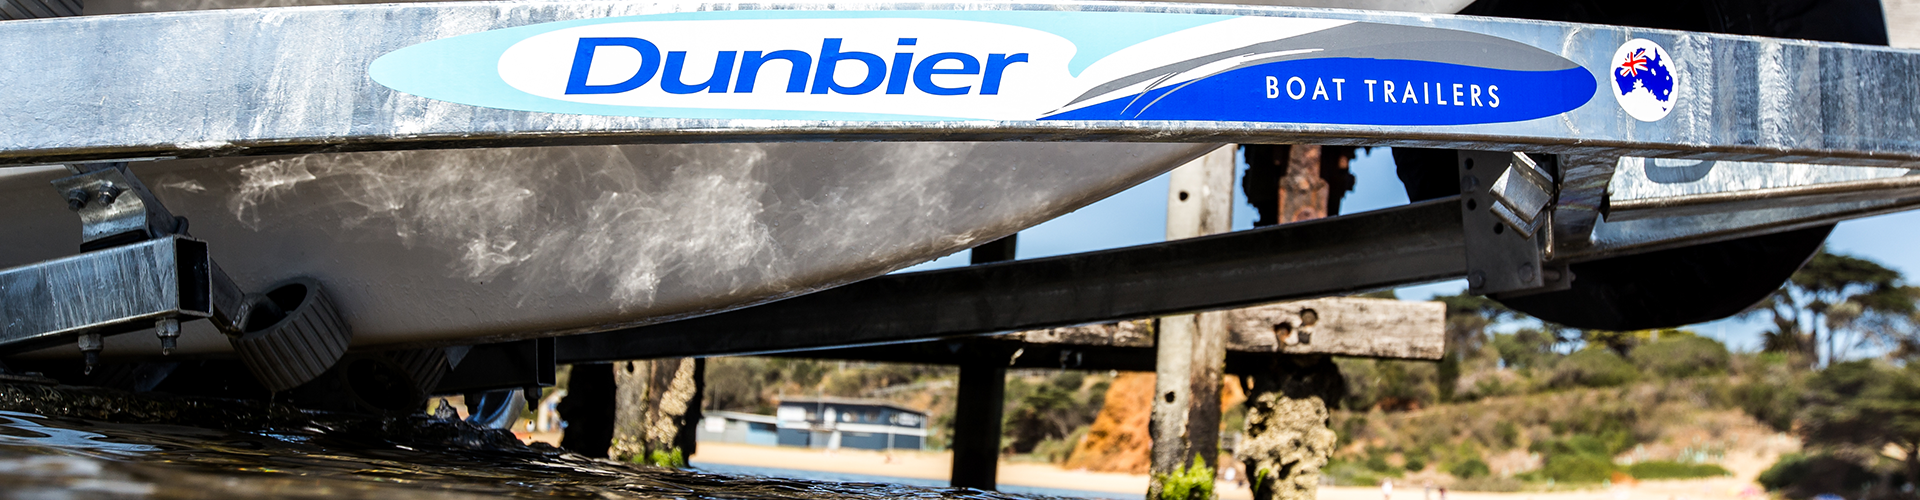 Dunbier Boat Trailers